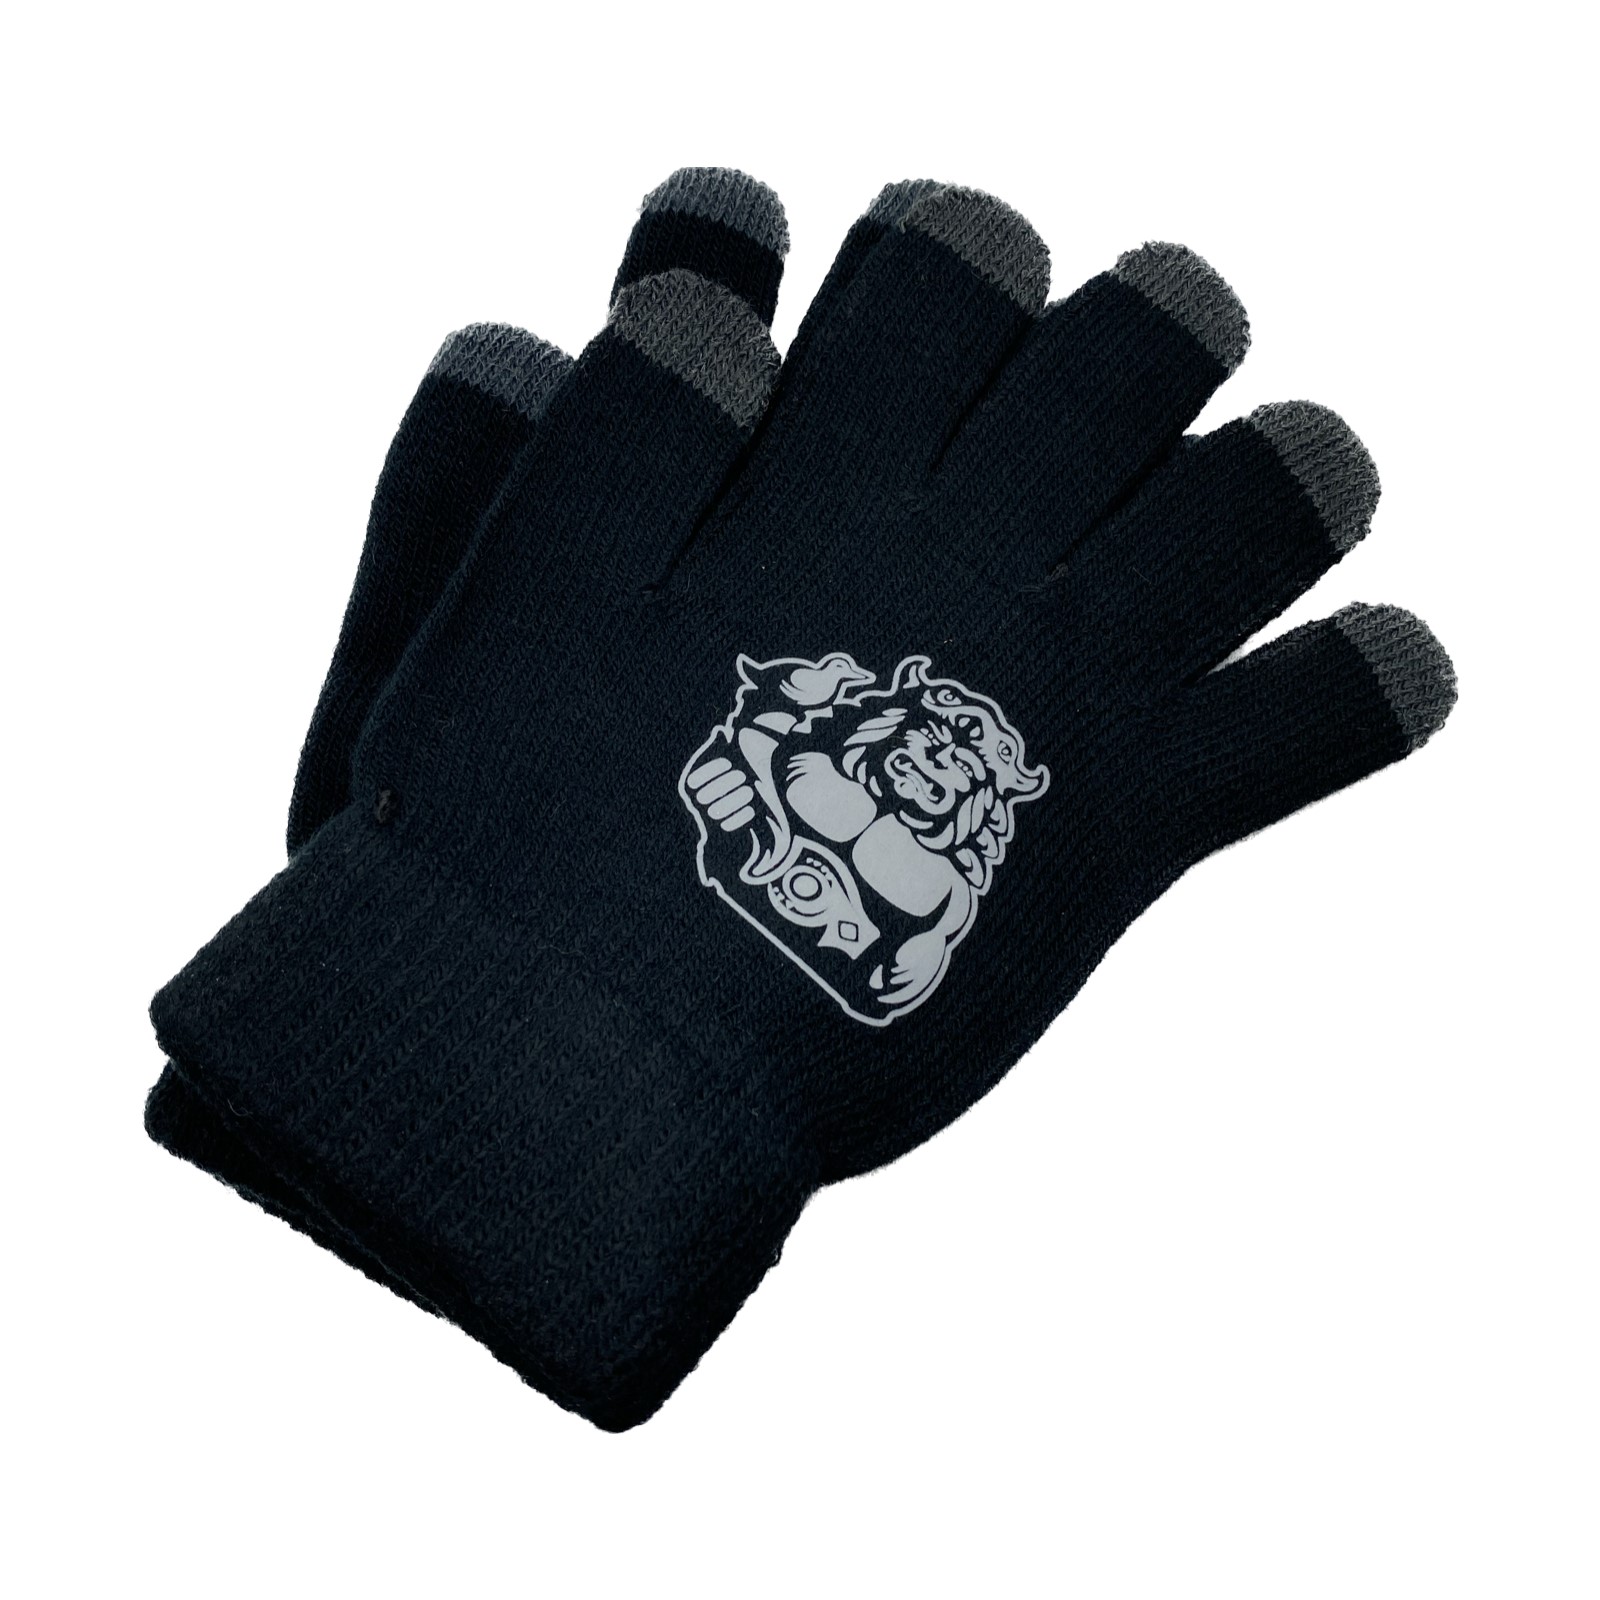 Radegast Smart gloves